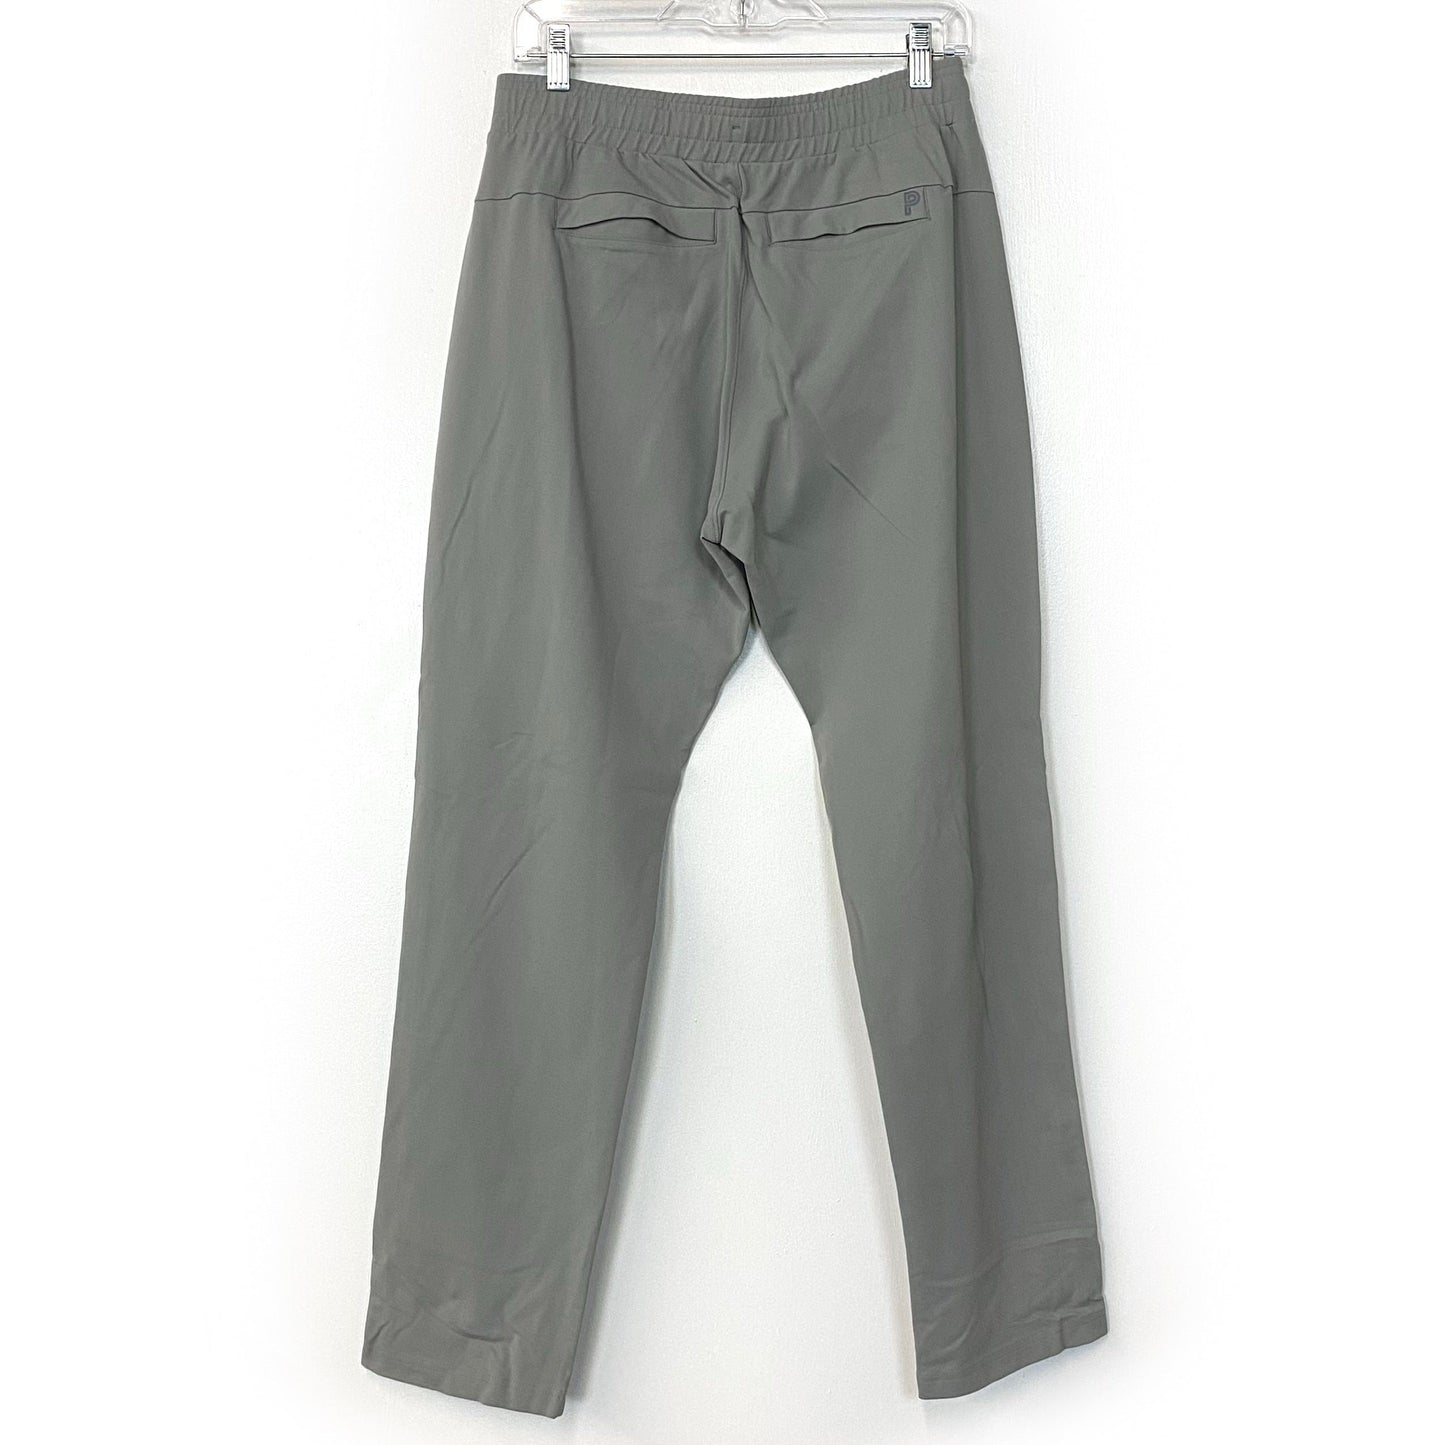 Public Rec Mens Activewear Pants 32x32 Light Gray EUC